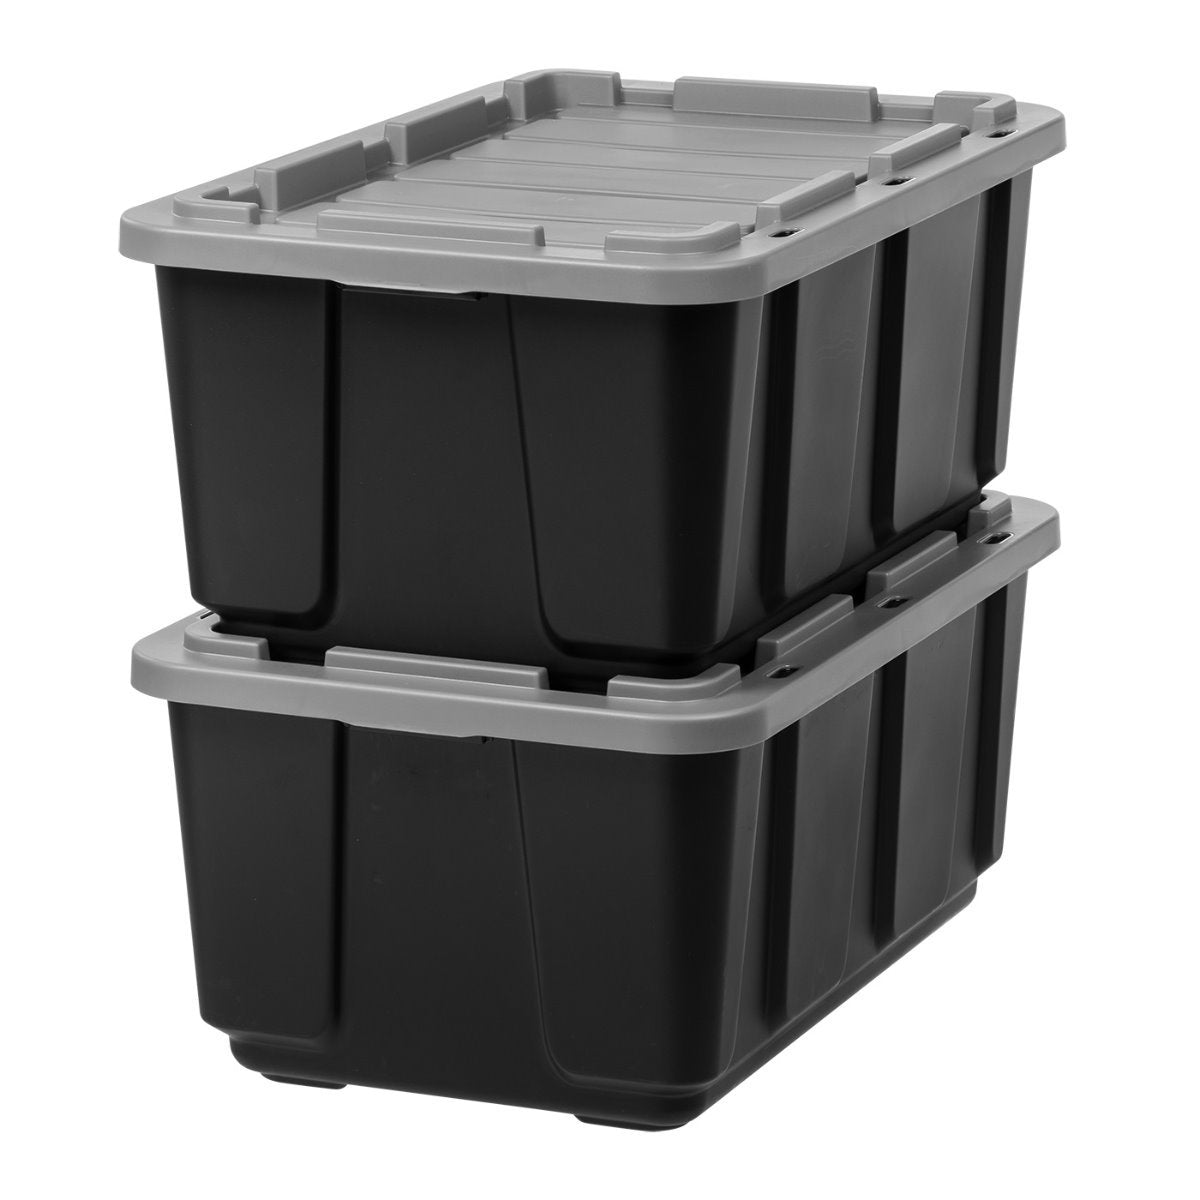 IRIS USA 20 Gallon Heavy-Duty Storage Plastic Bin Tote Container, Black,  Set of 4